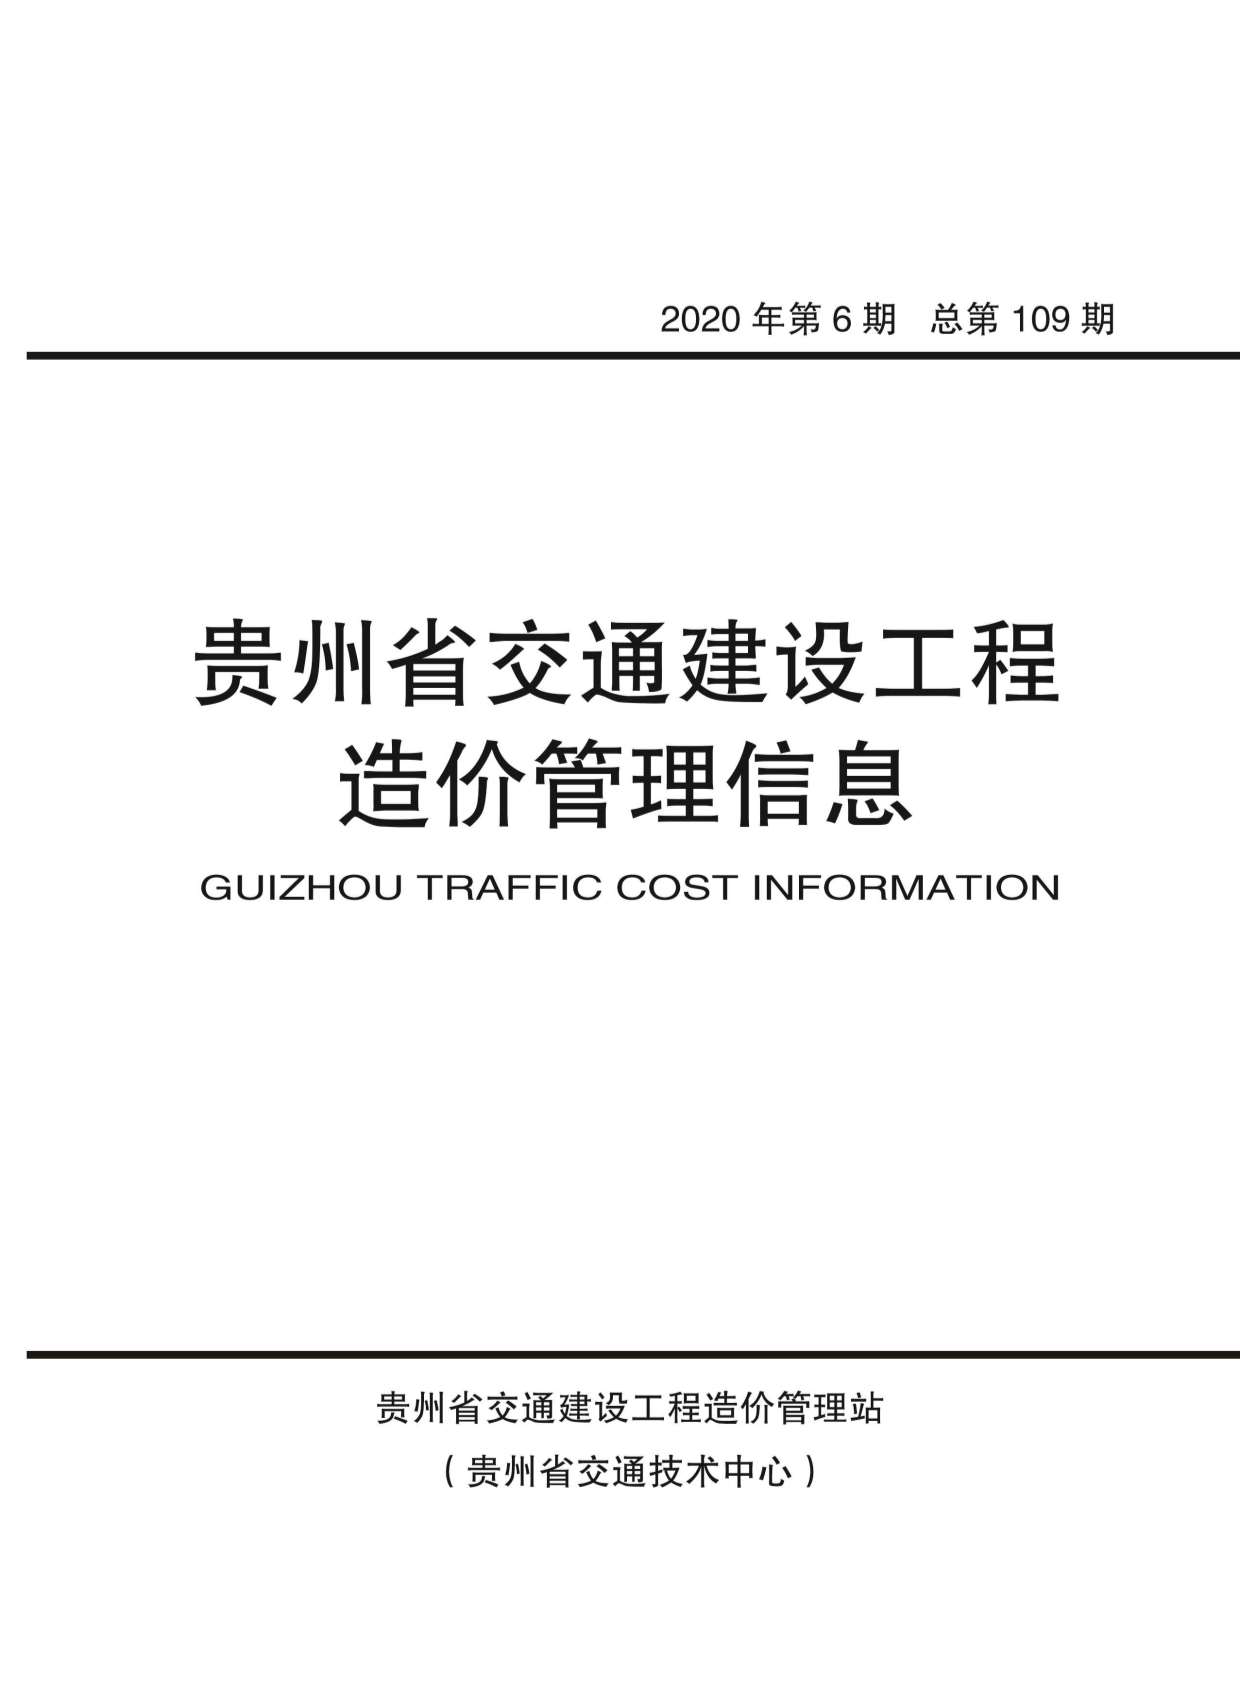 贵州省2020年6月交通公路信息价